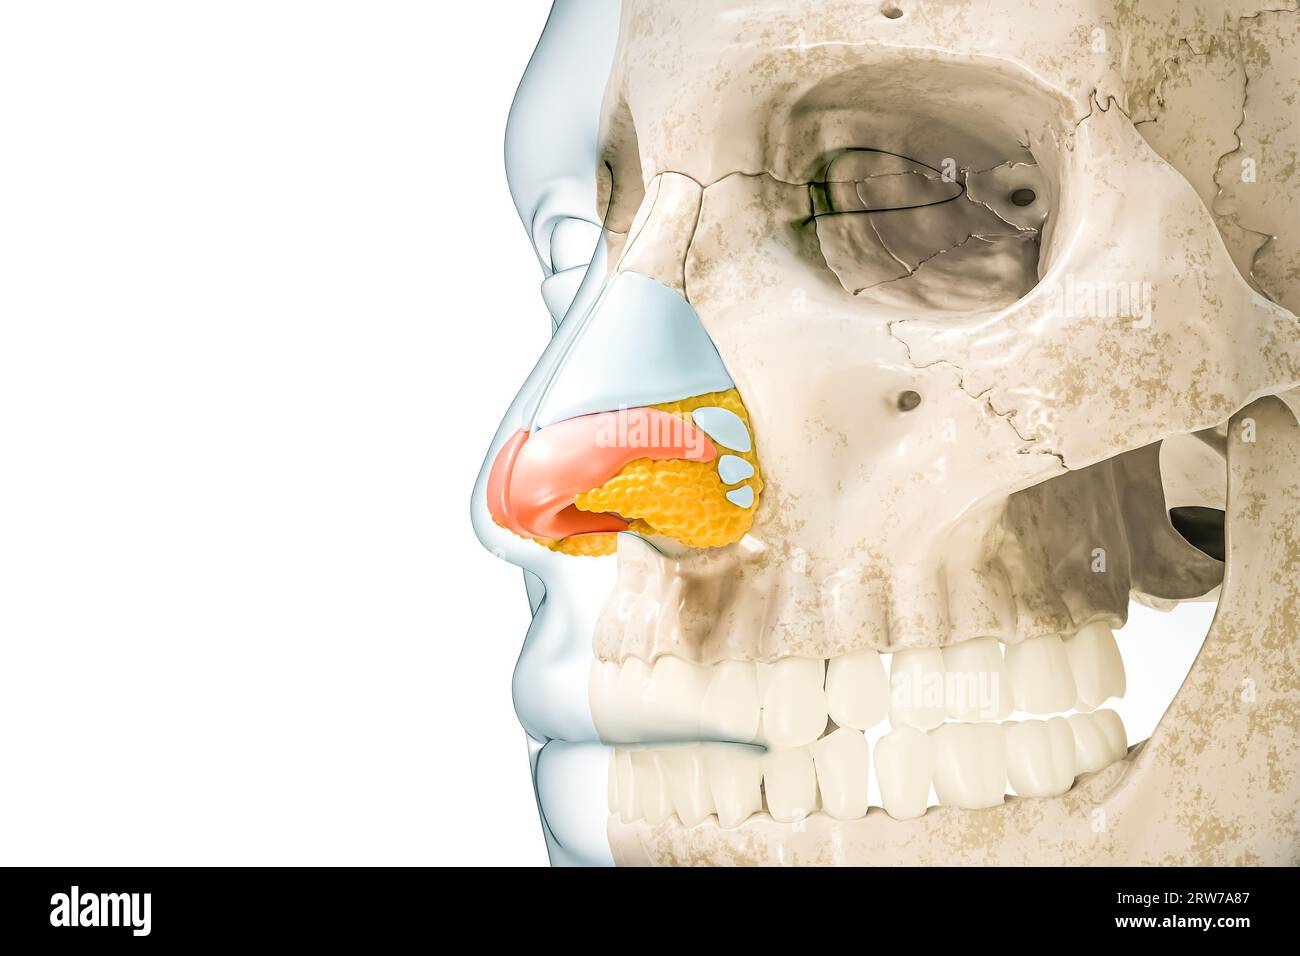 Cartilagine nasale ALAR di colore rosso con contorni del corpo illustrazione di rendering 3D isolata su bianco con spazio di copia. Anatomia scheletro umano e naso, med Foto Stock